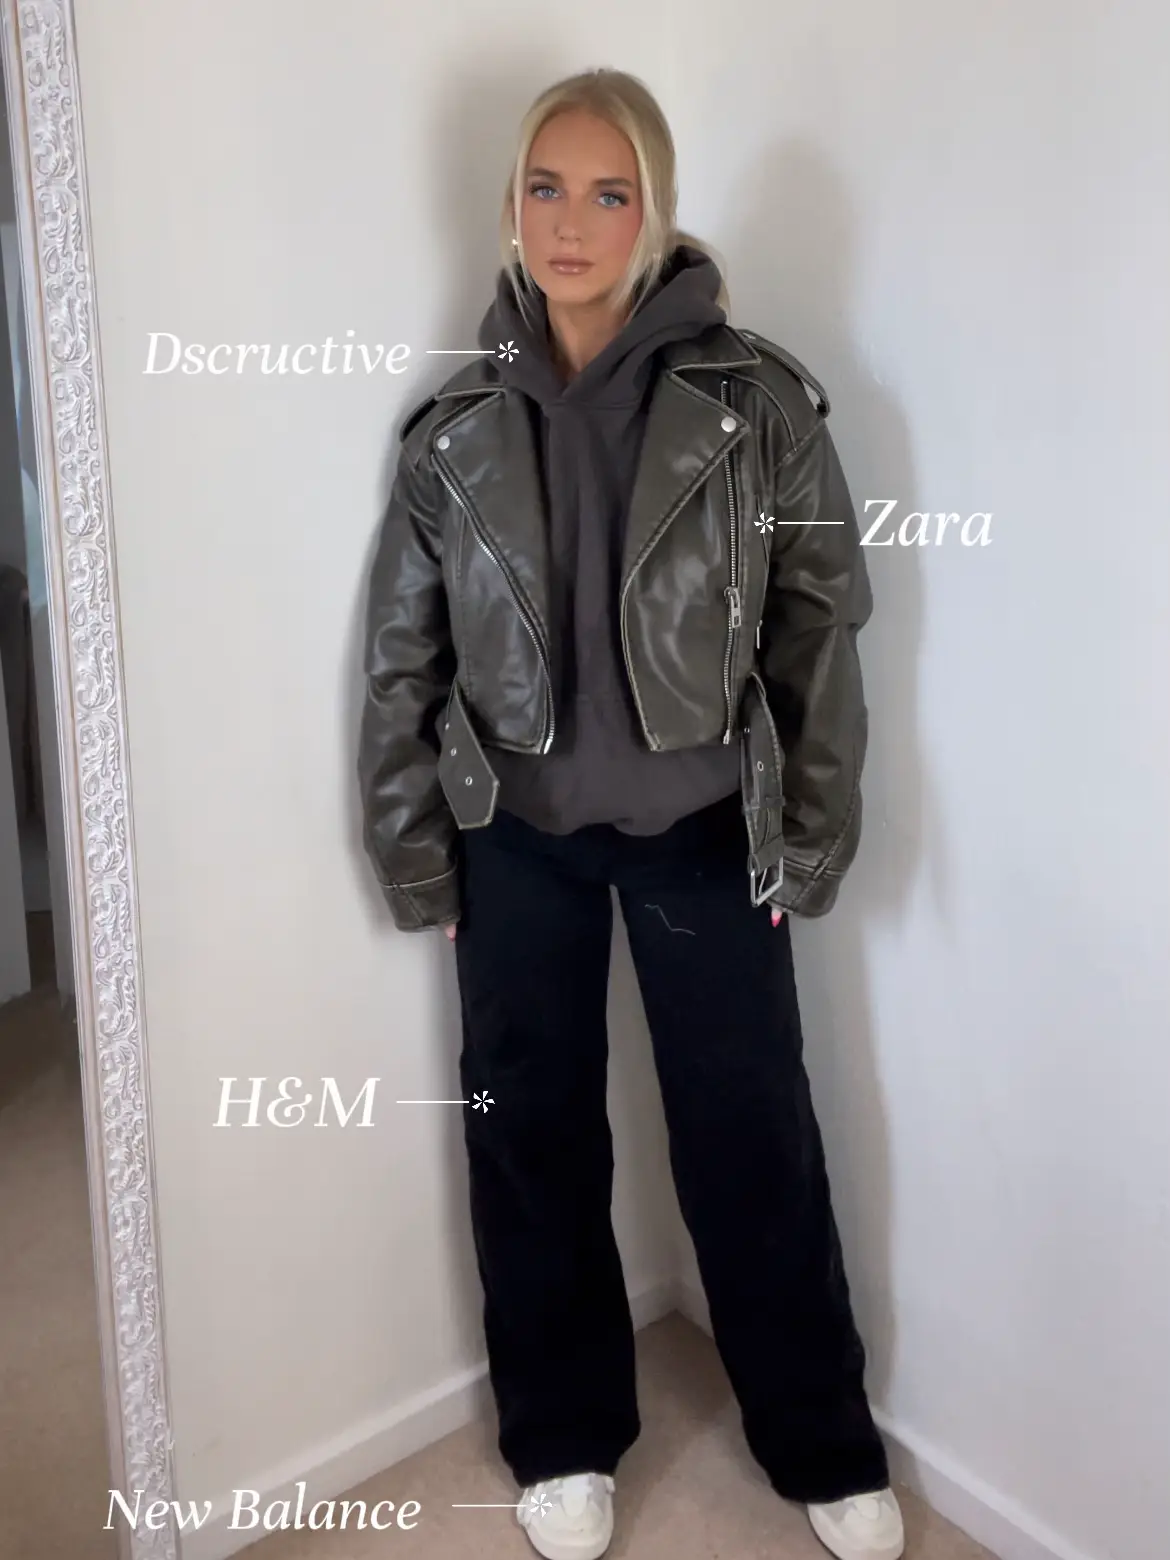 Zara - Distressed Faux Leather Cropped Biker Jacket - Black - Women